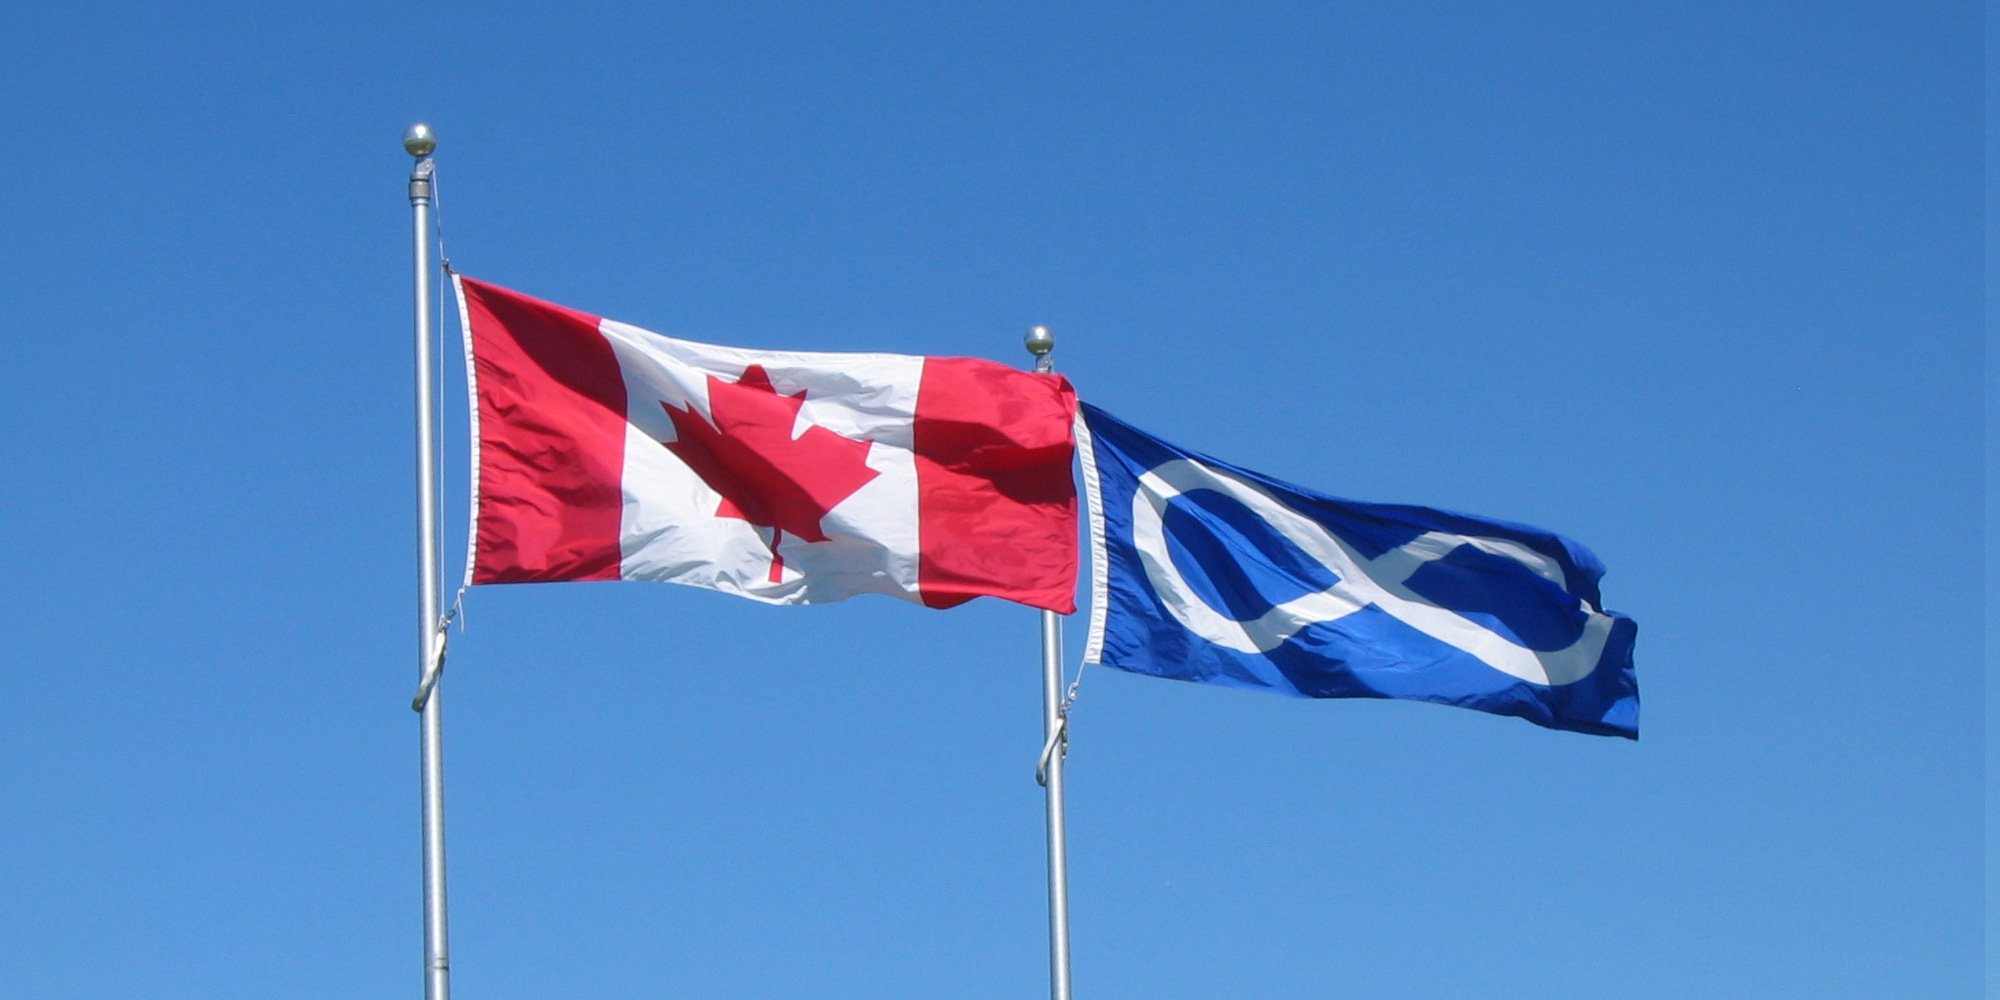 Canadian and Métis flags